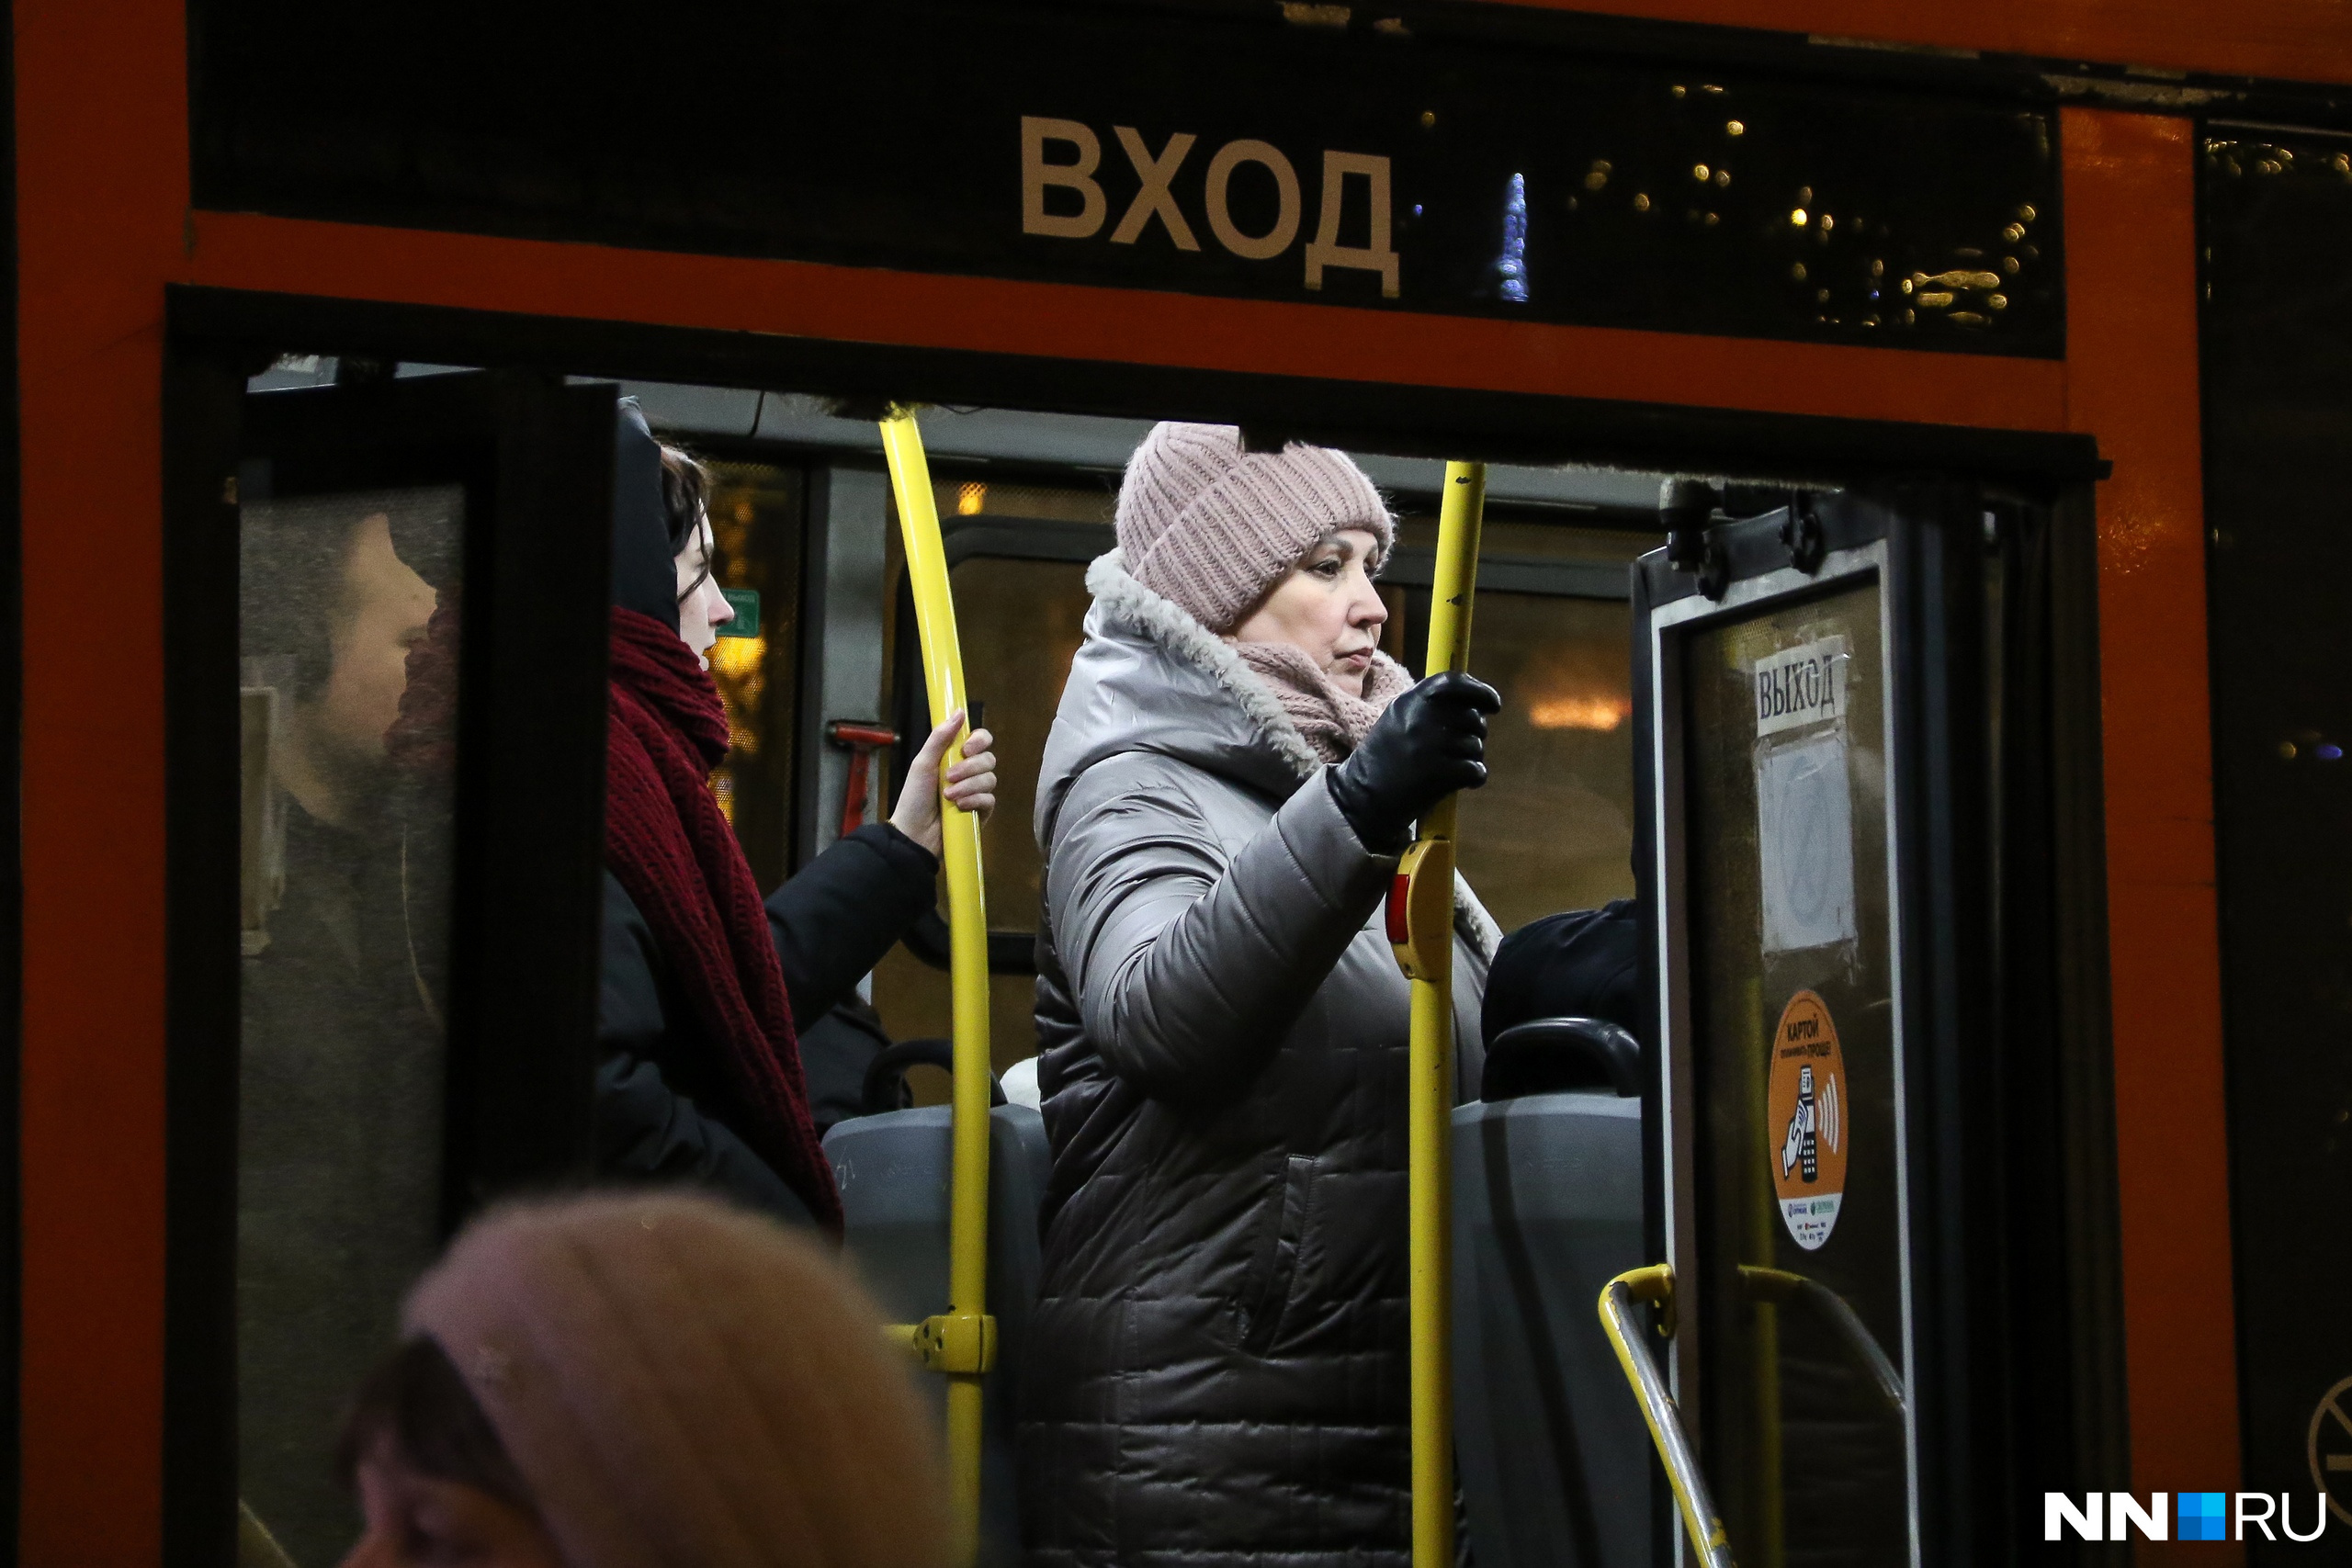 Утомленные маршруткой. Портреты уставших людей из переполненных автобусов Нижнего Новгорода